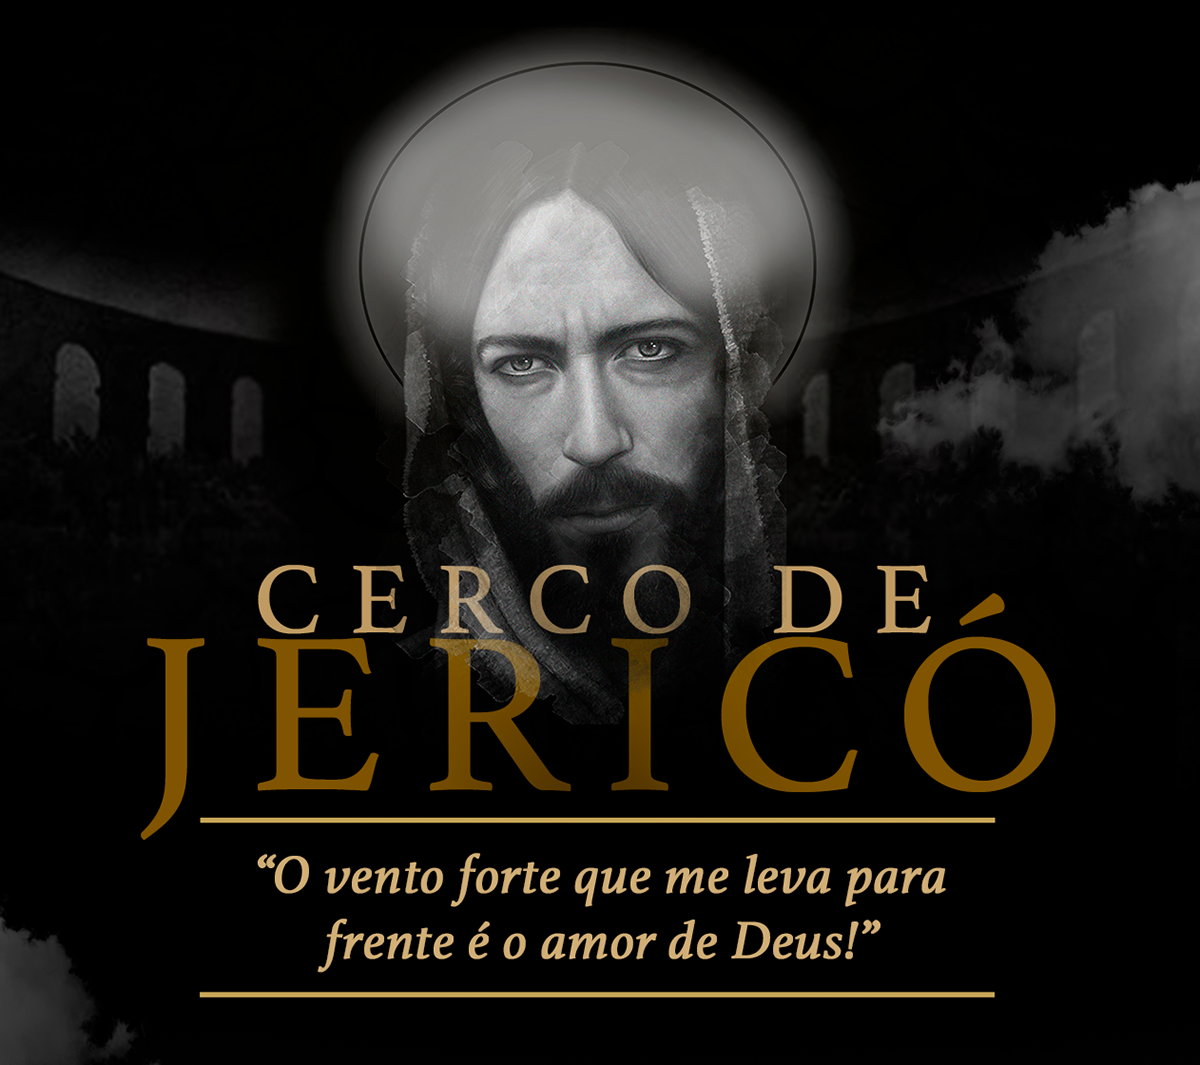 Cerco de Jericó Catholic católico igreja católica paróquia identidade visual Social media post jesus faith MISSA